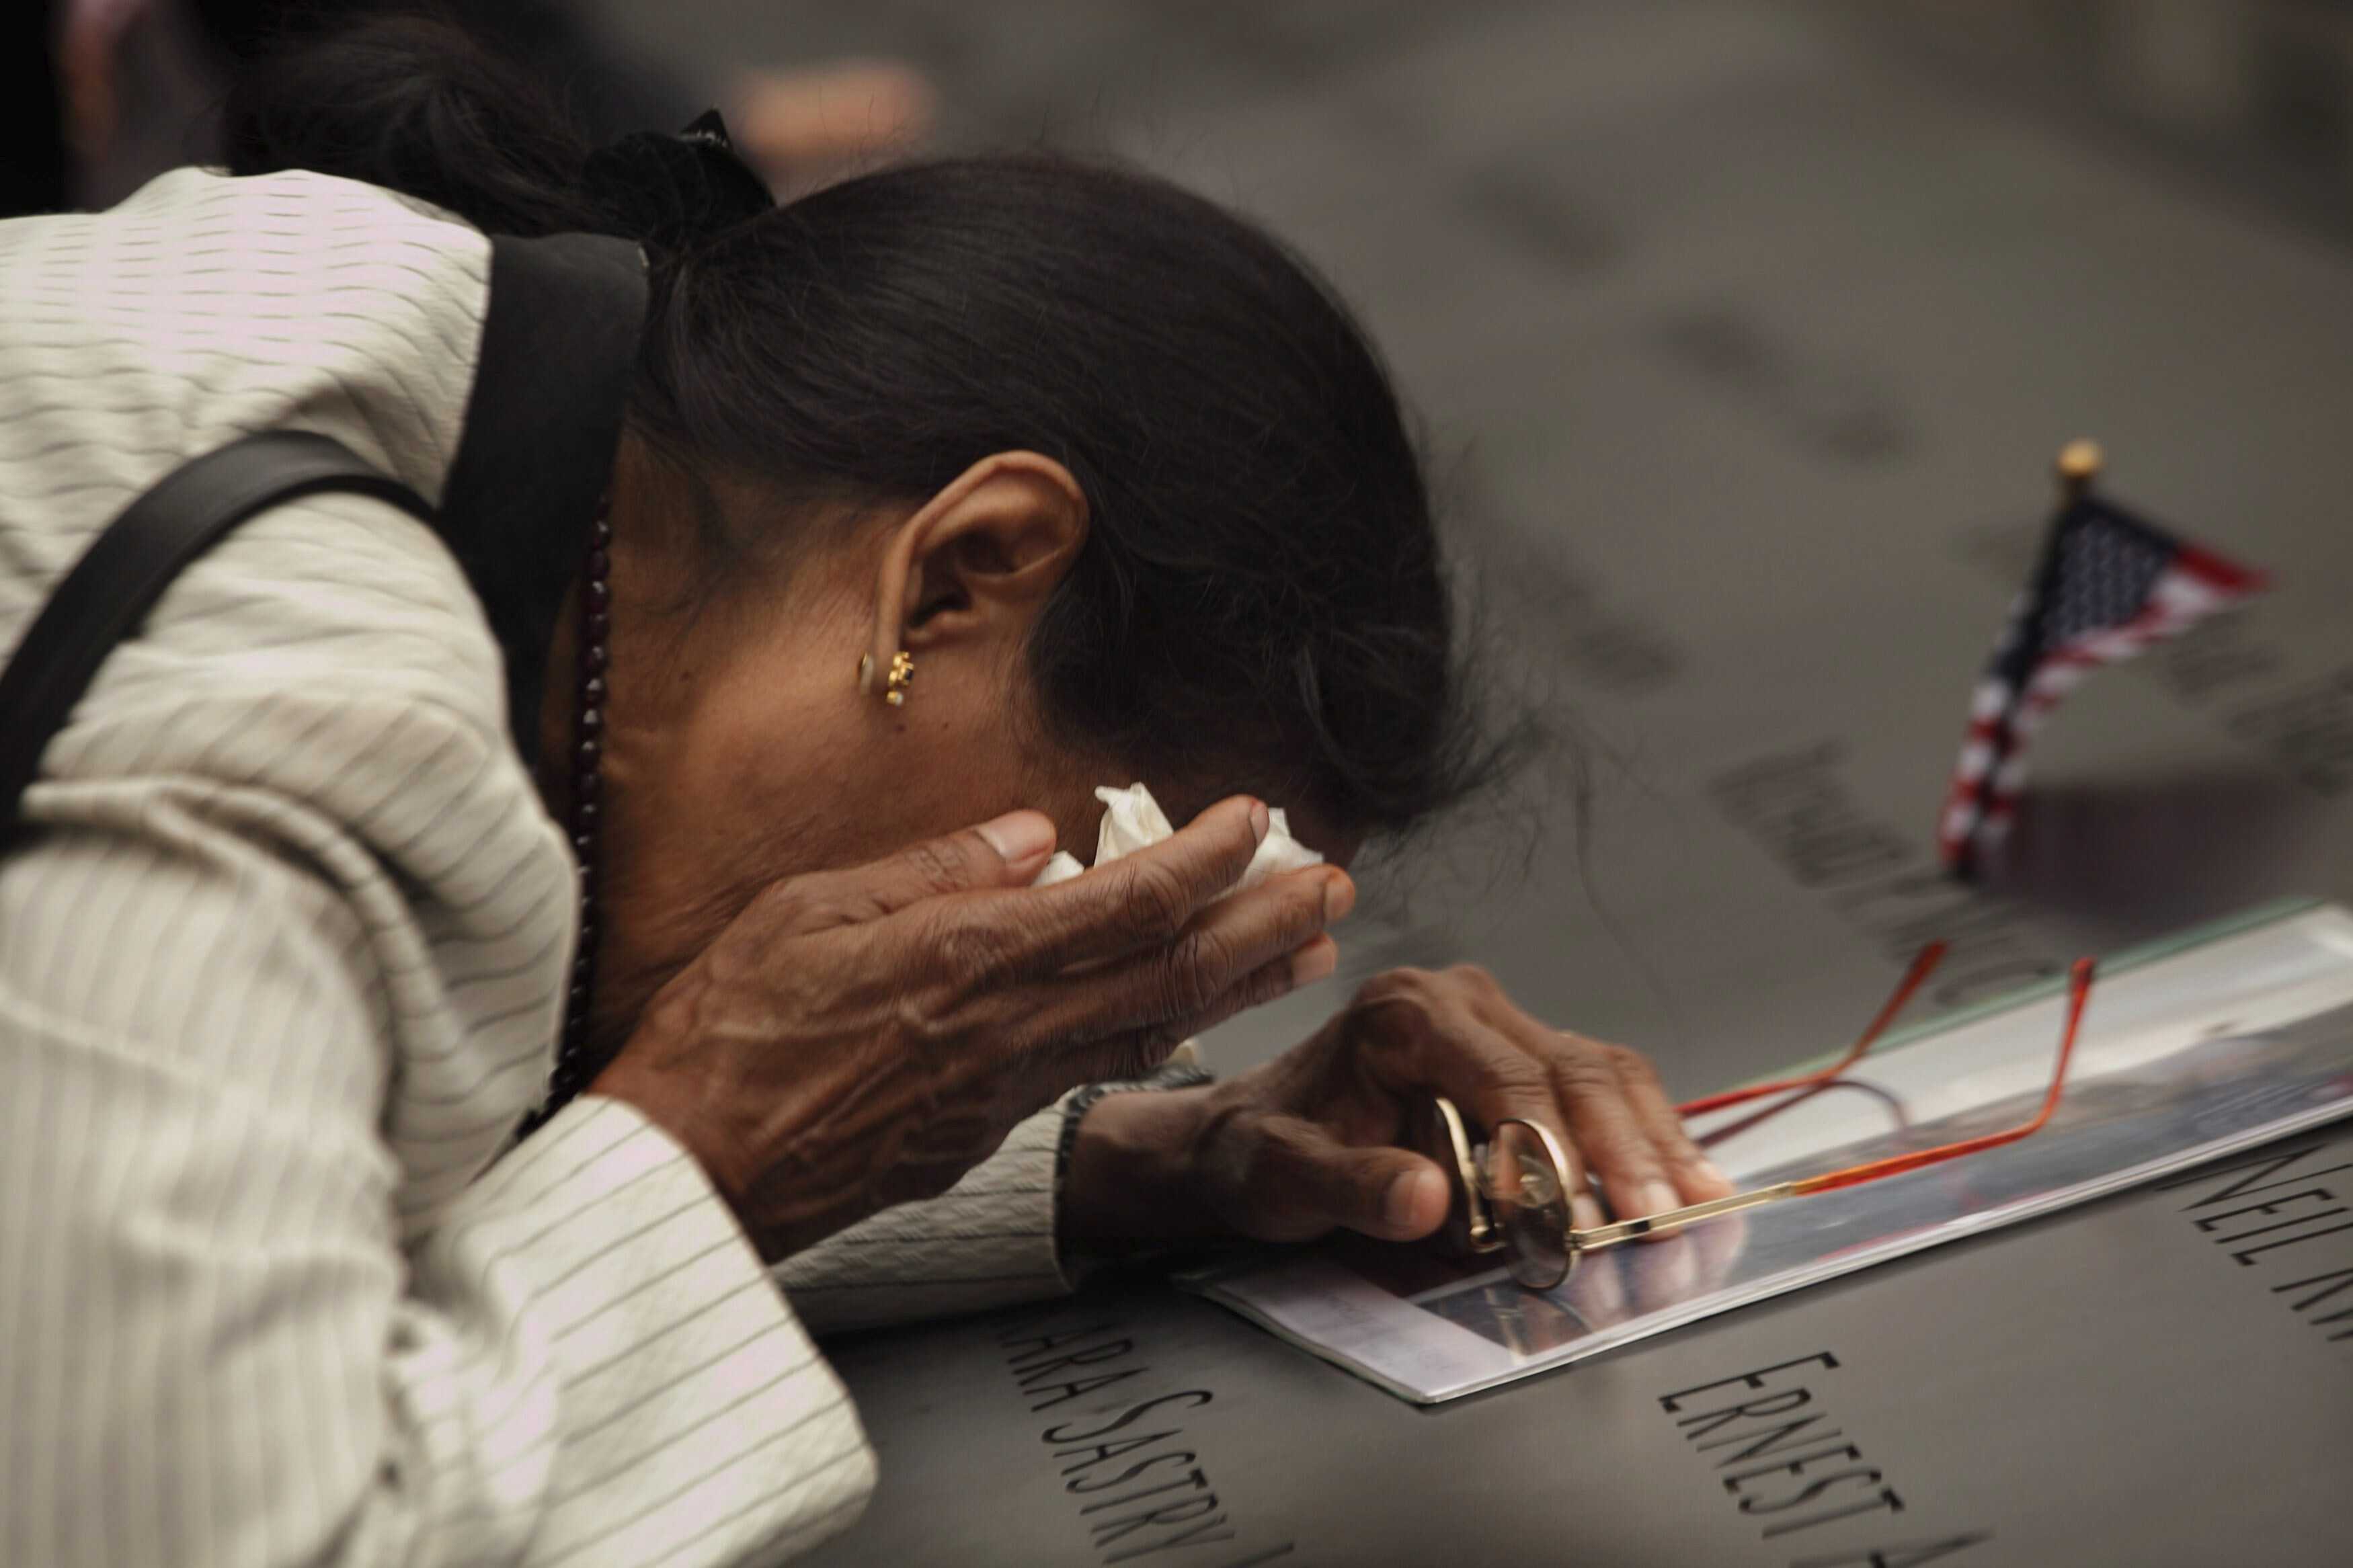 Una mujer llora sobre la placa con los nombres de las víctimas en el Memorial del 11-S, en la zona cero de Nueva York, Estados Unidos el domingo 11 de septiembre de 2011,  cuando se cumplieron 10 años del ataque terrorista que dejó casi 3,000 muertos.